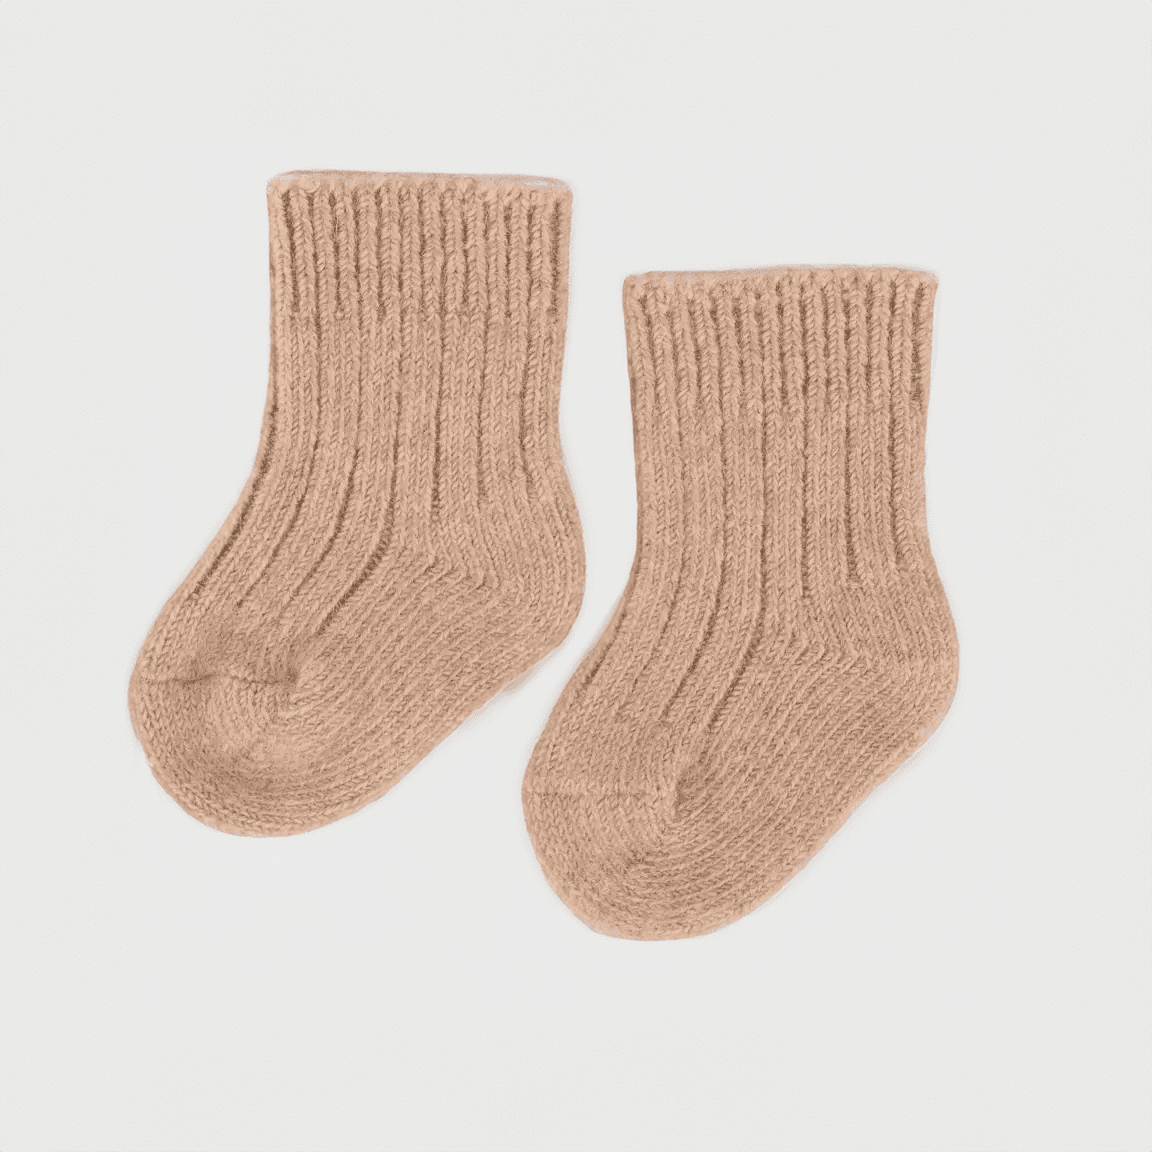 Little Steps socks: Made of 100% Mongolian baby camel wool